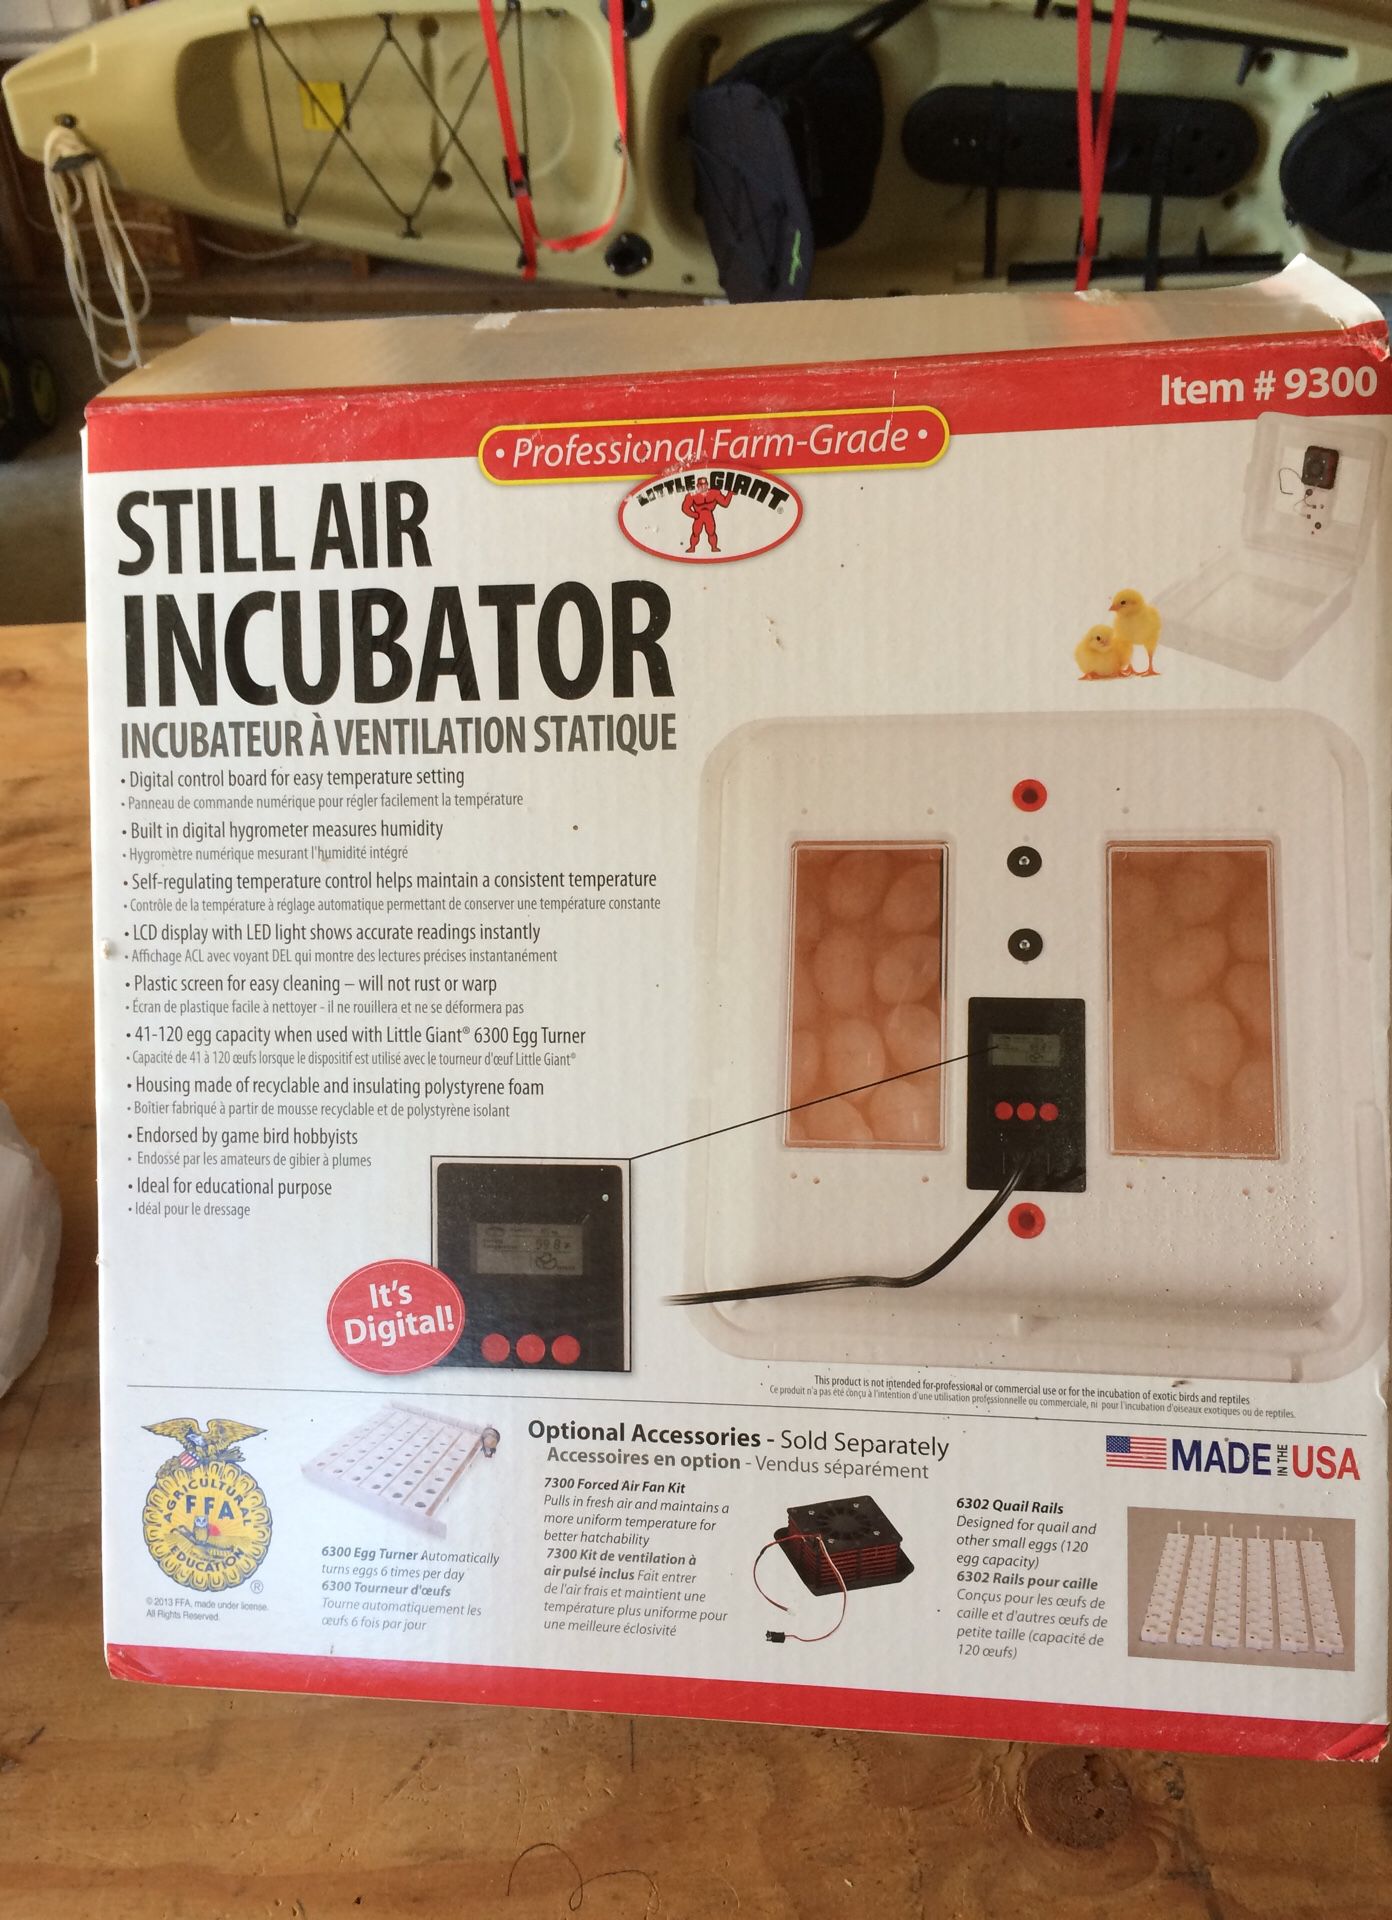 Still air incubator